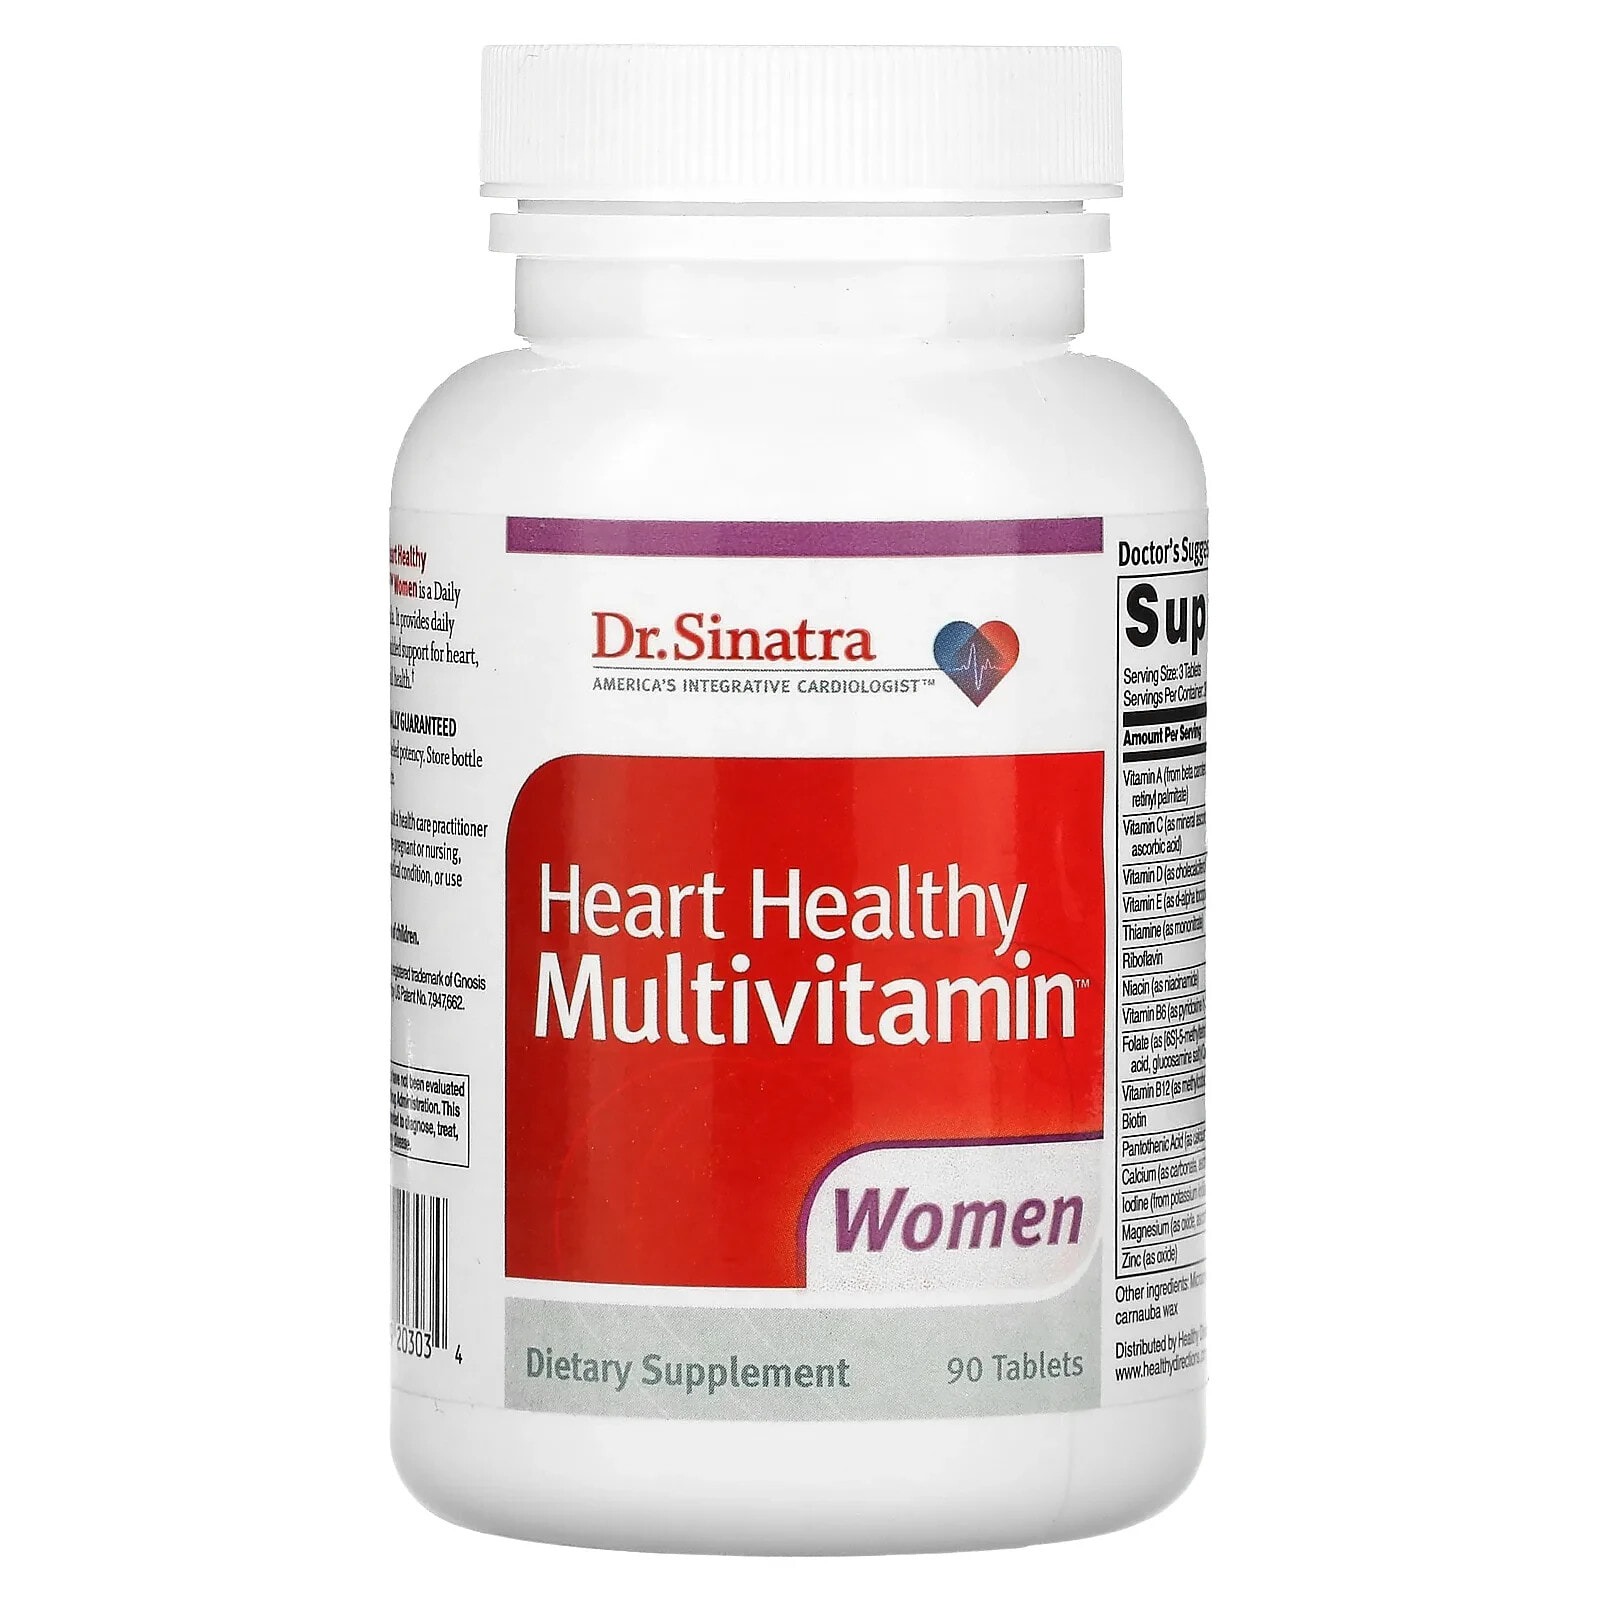 Heart Healthy Multivitamin, Women, 90 Tablets